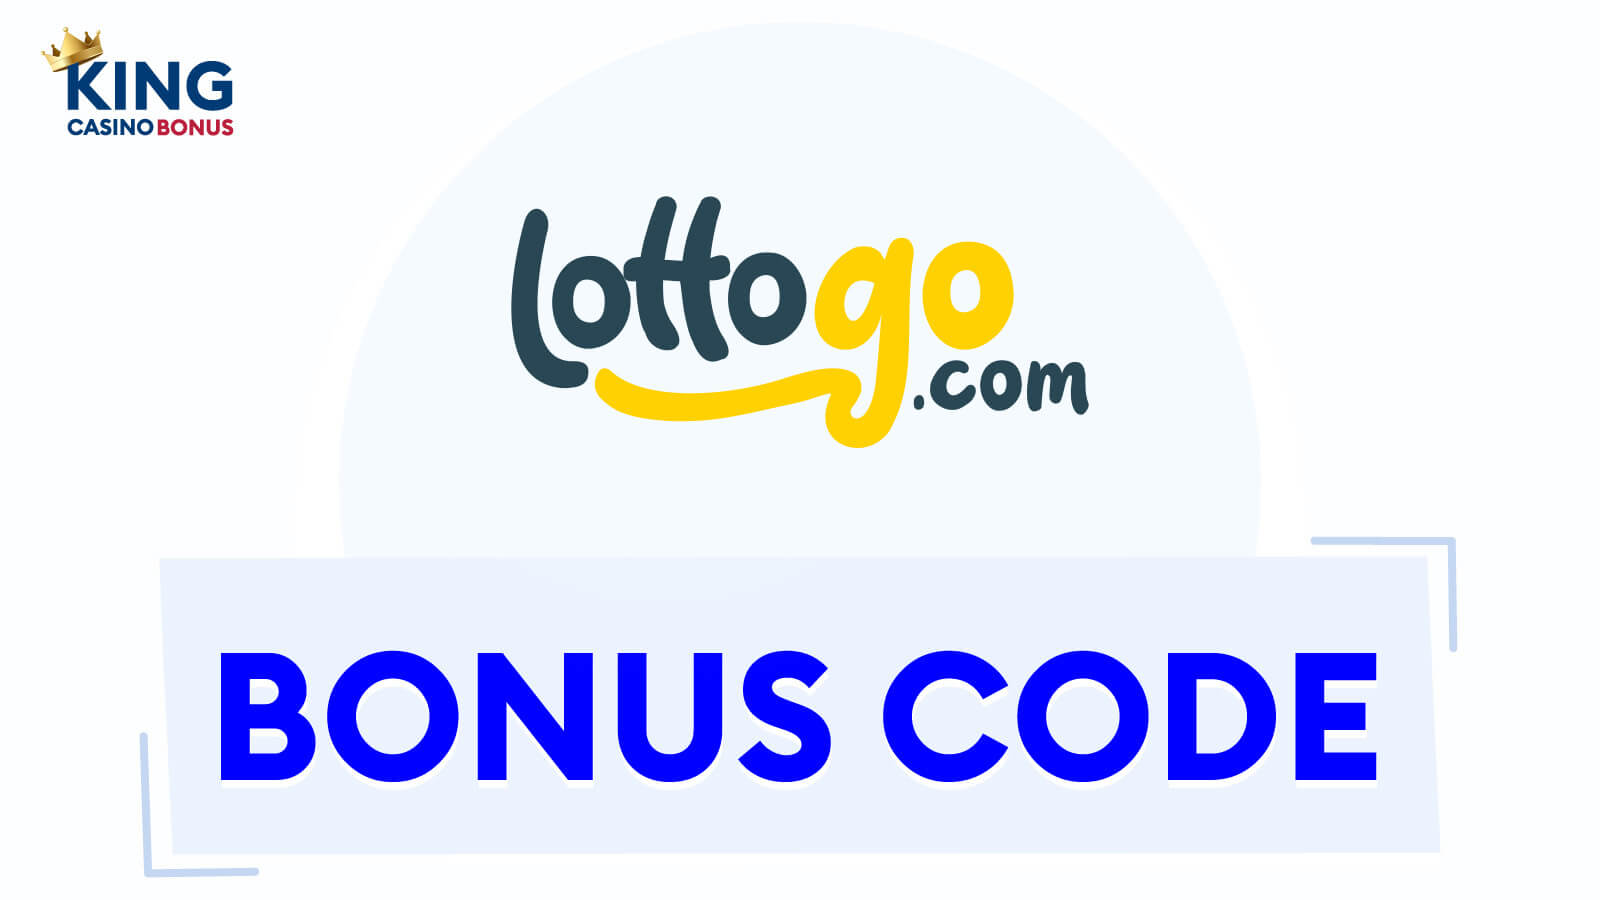 LottoGo Casino Bonus Codes